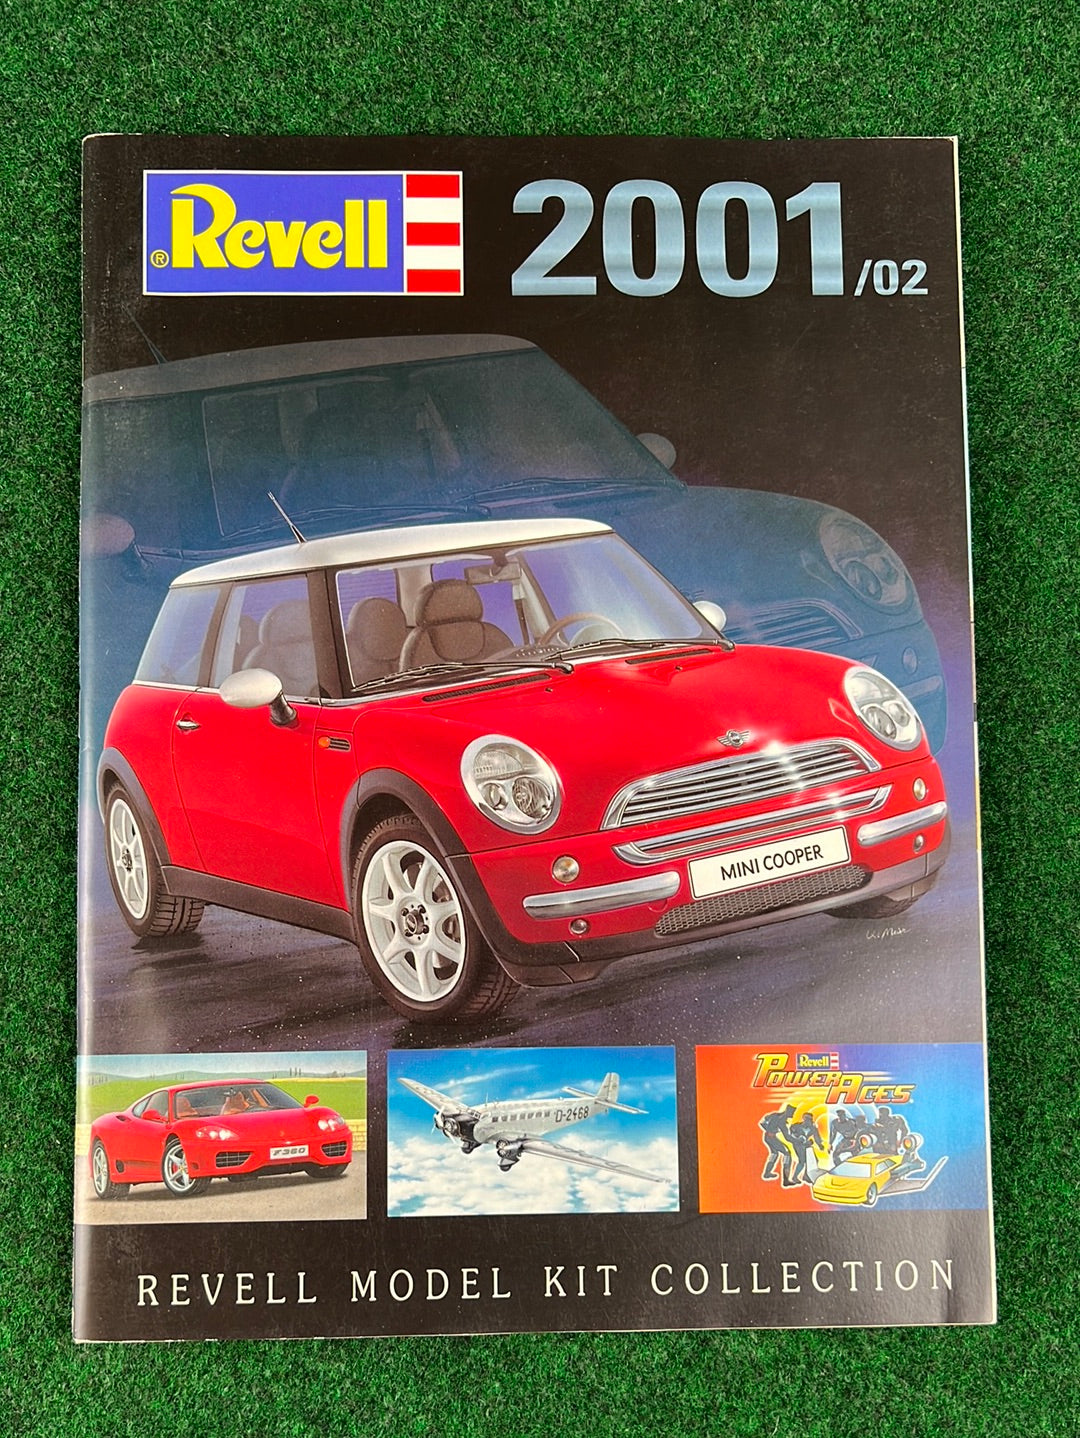 Revell - Model Kit Collection Catalog 2001-2002